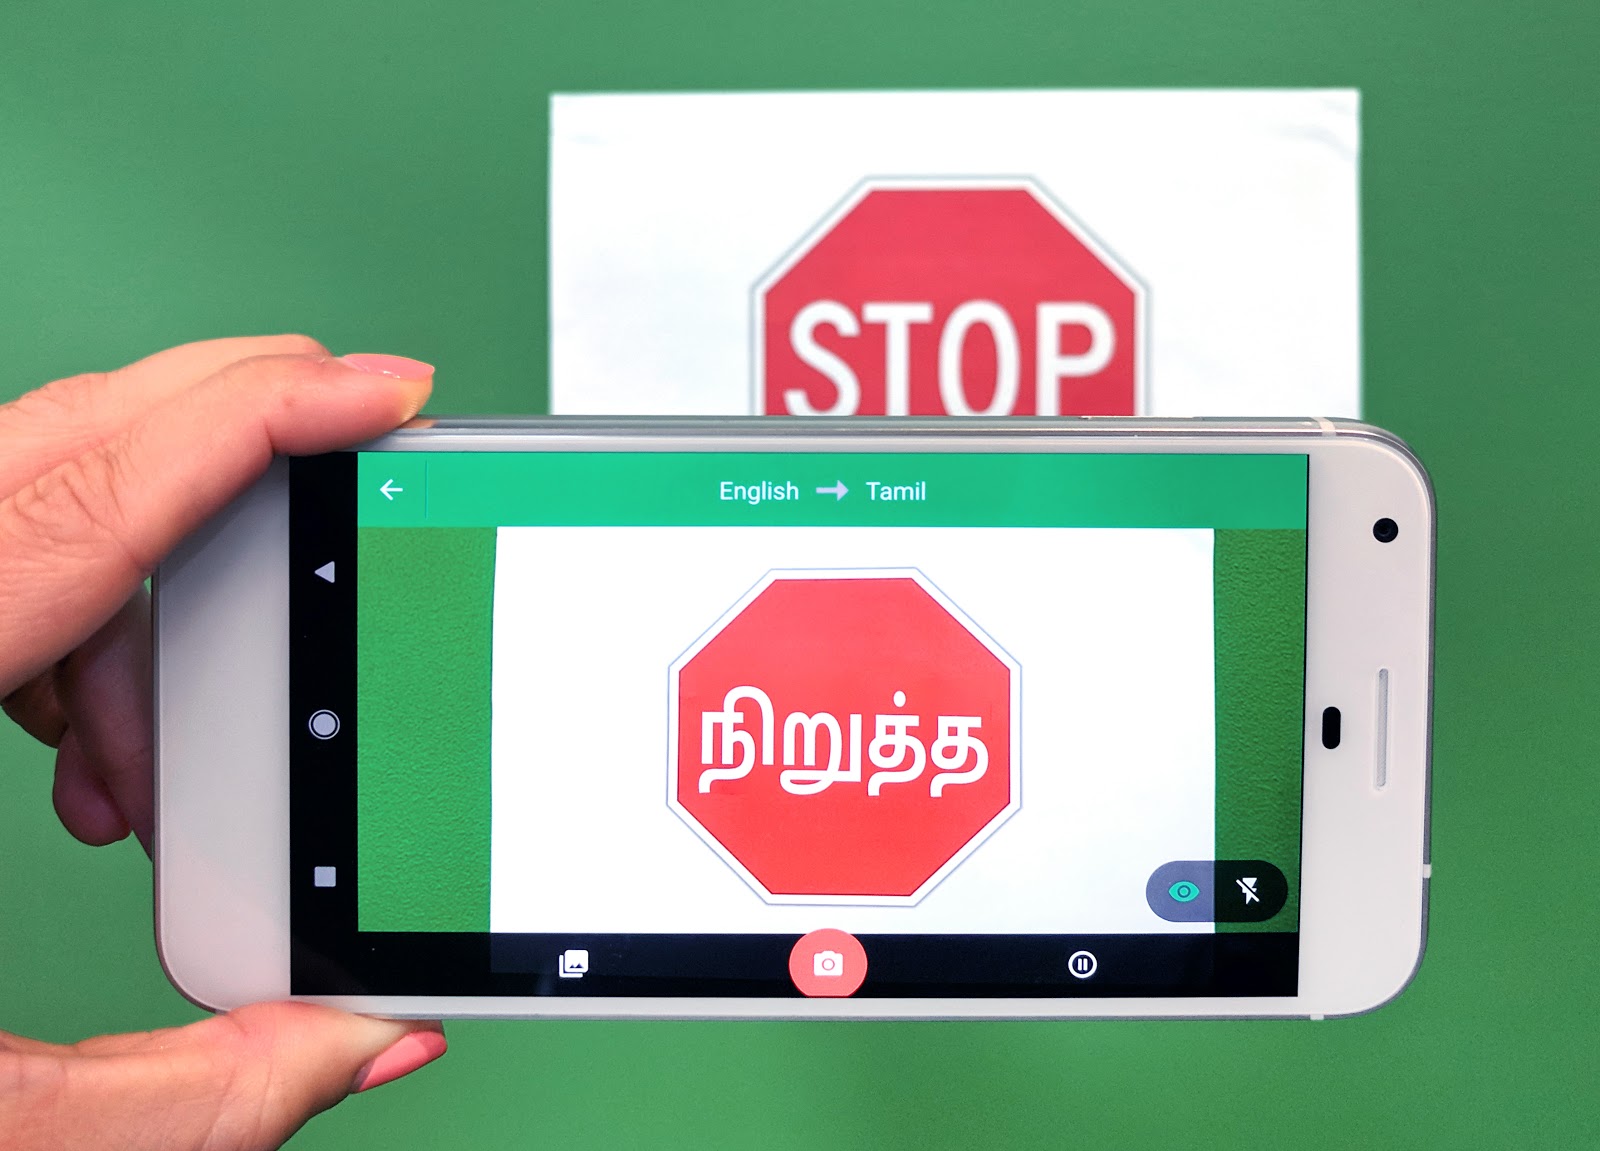 Le support hors ligne pour Google Translate arrive en Inde